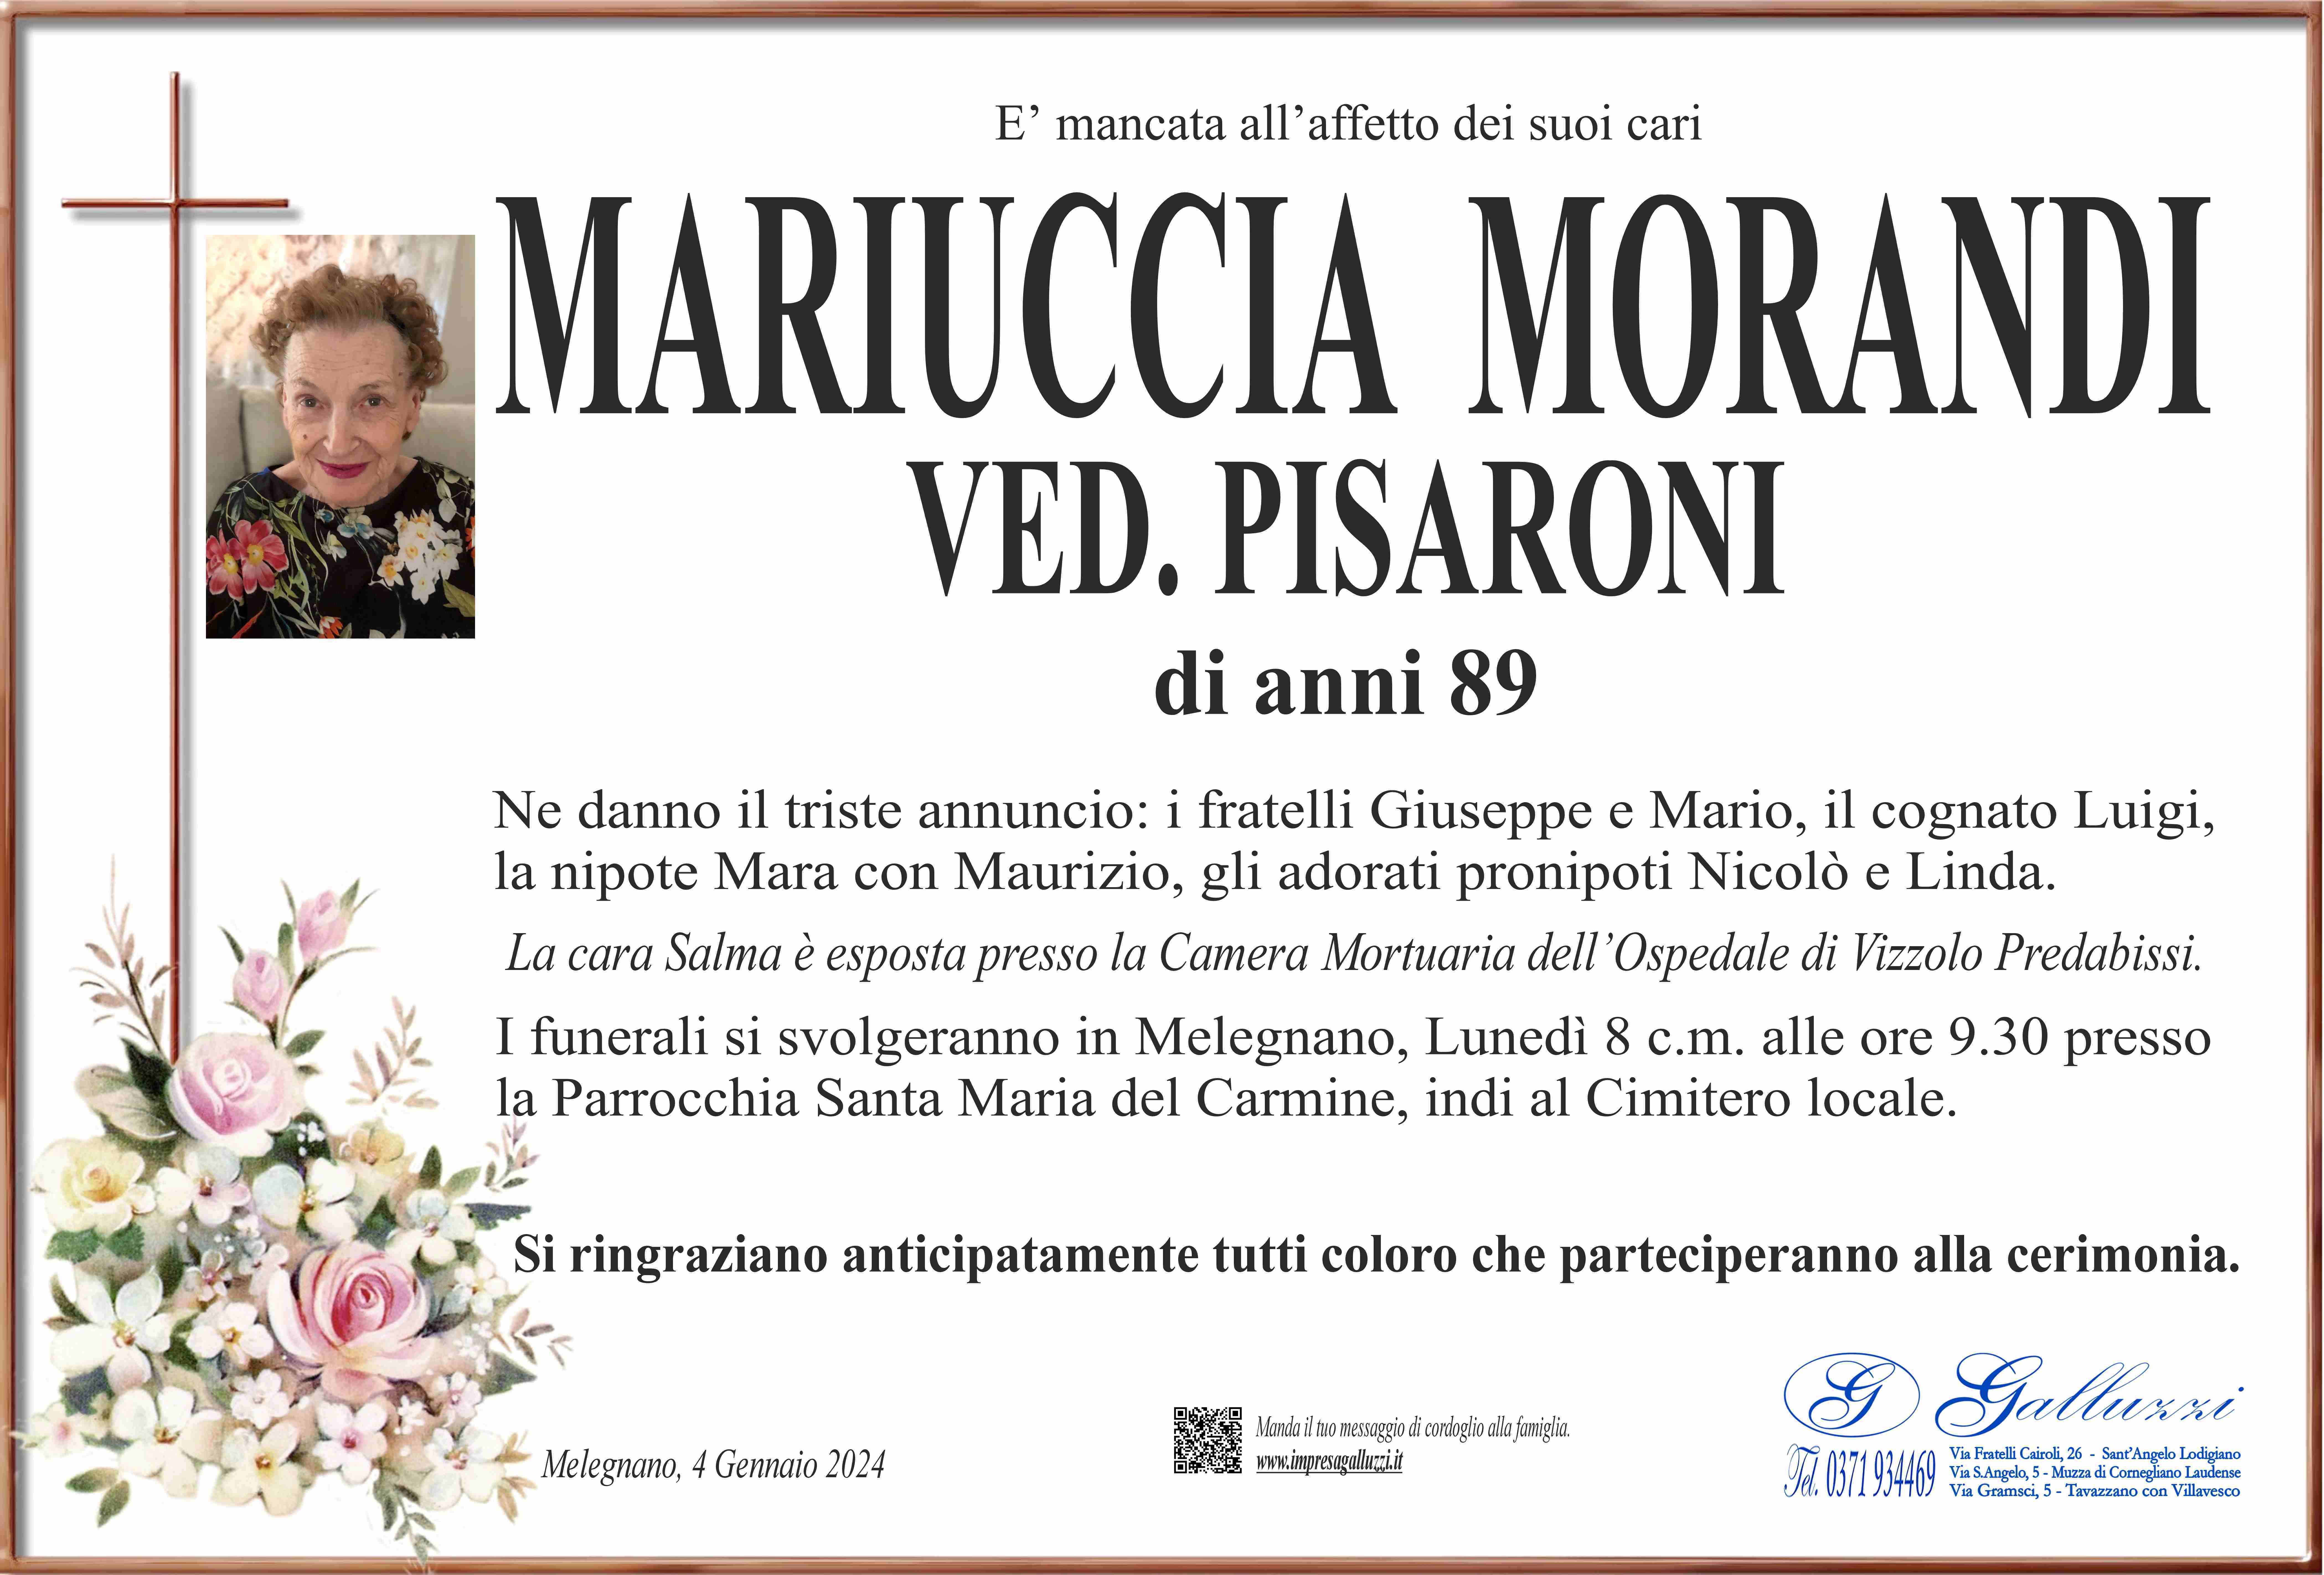 Mariuccia Morandi